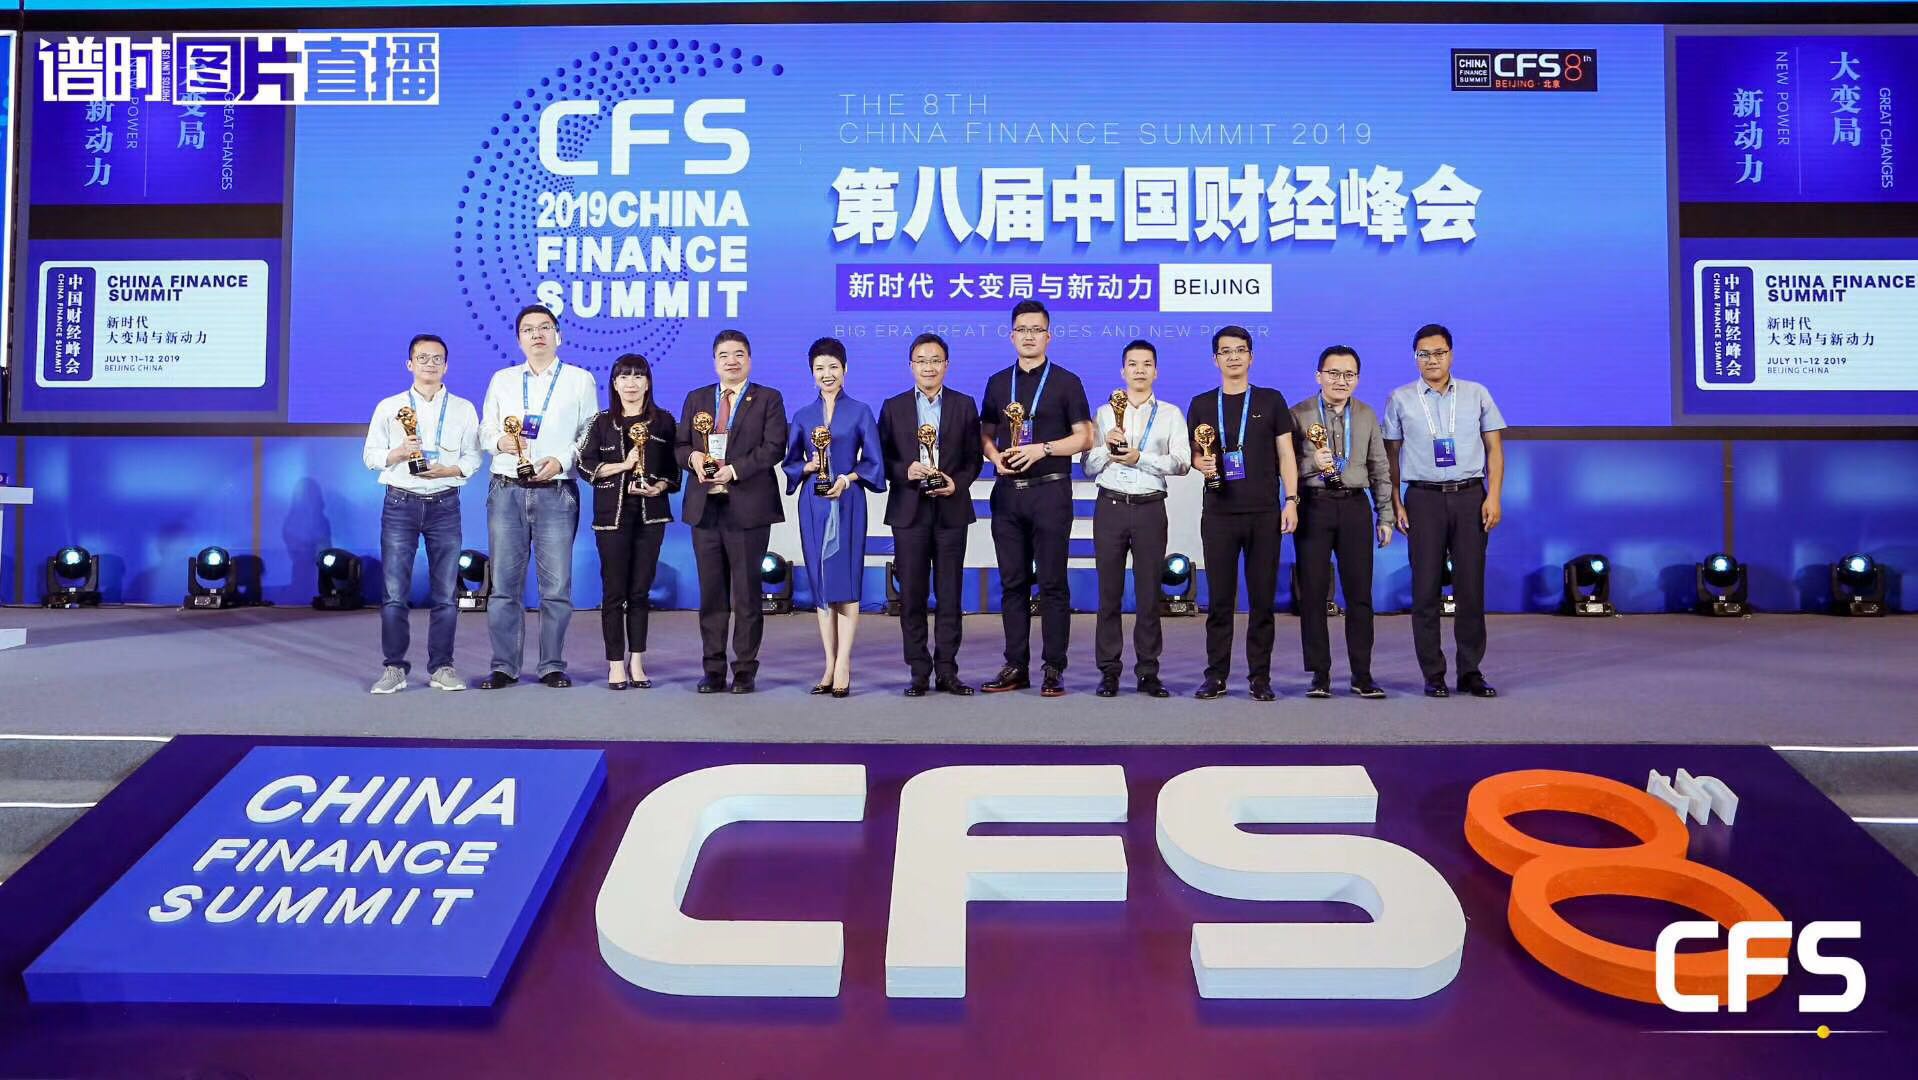 希鸥网创始人李志磊受邀参加第八届中国财经峰会,为商业领袖颁奖